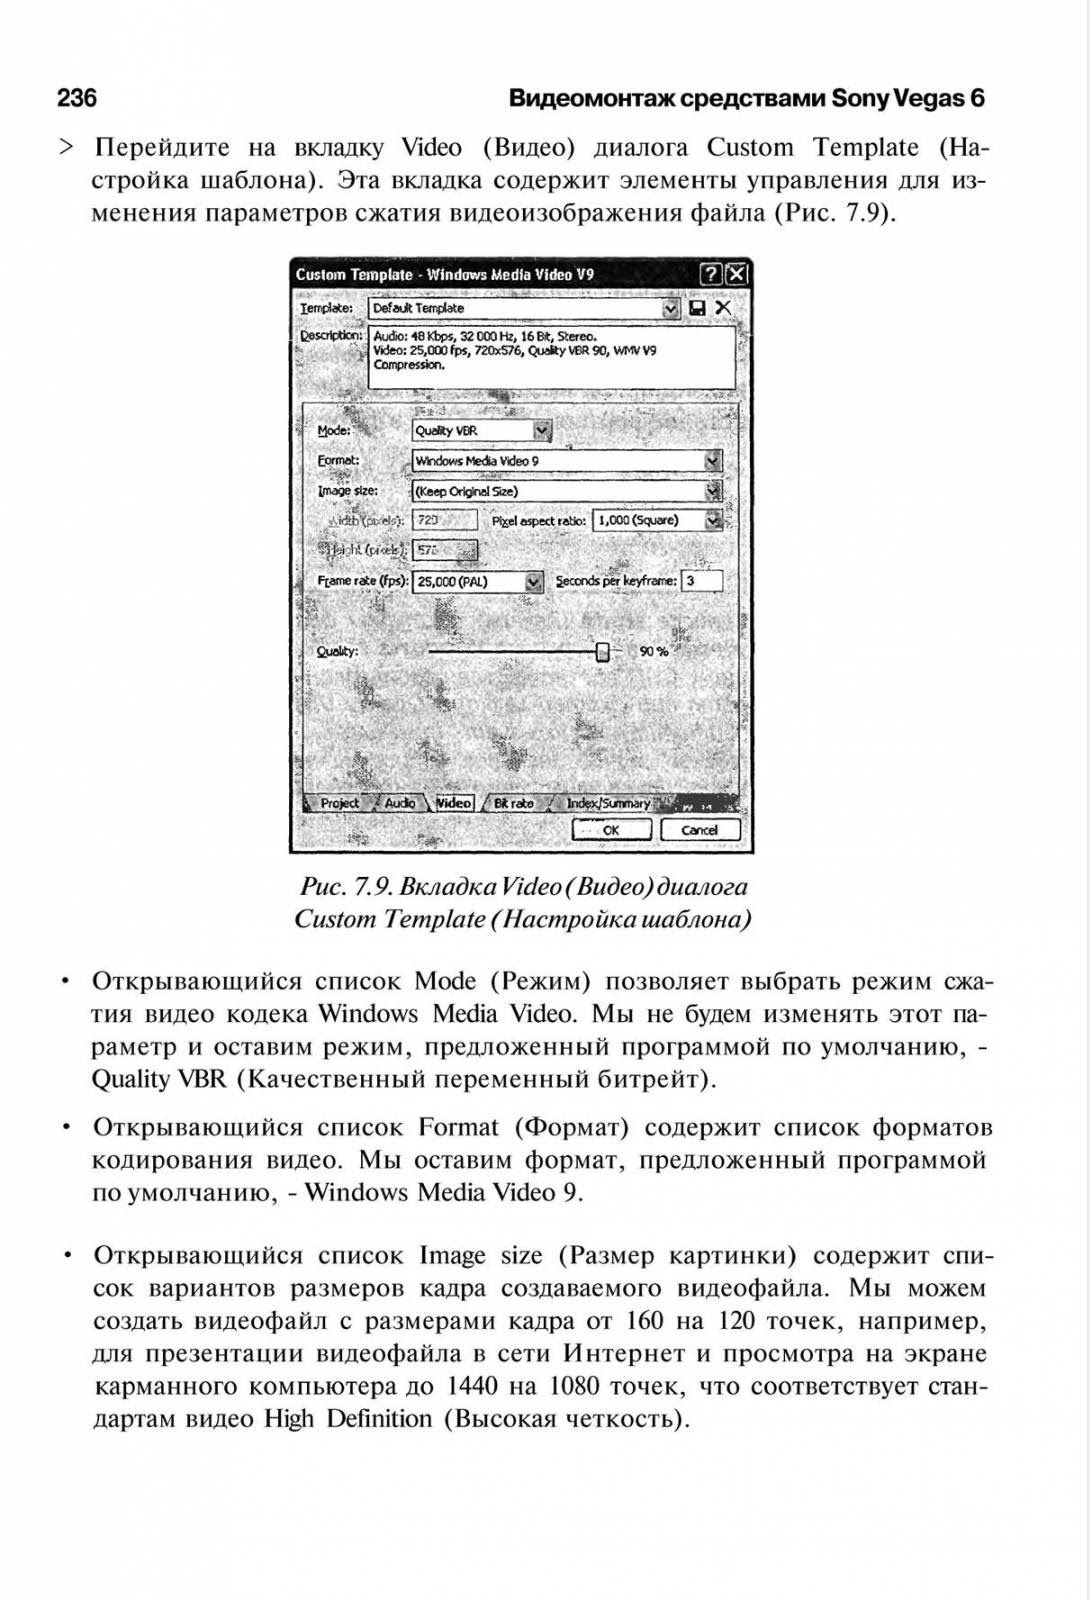 http://redaktori-uroki.3dn.ru/_ph/14/162754667.jpg